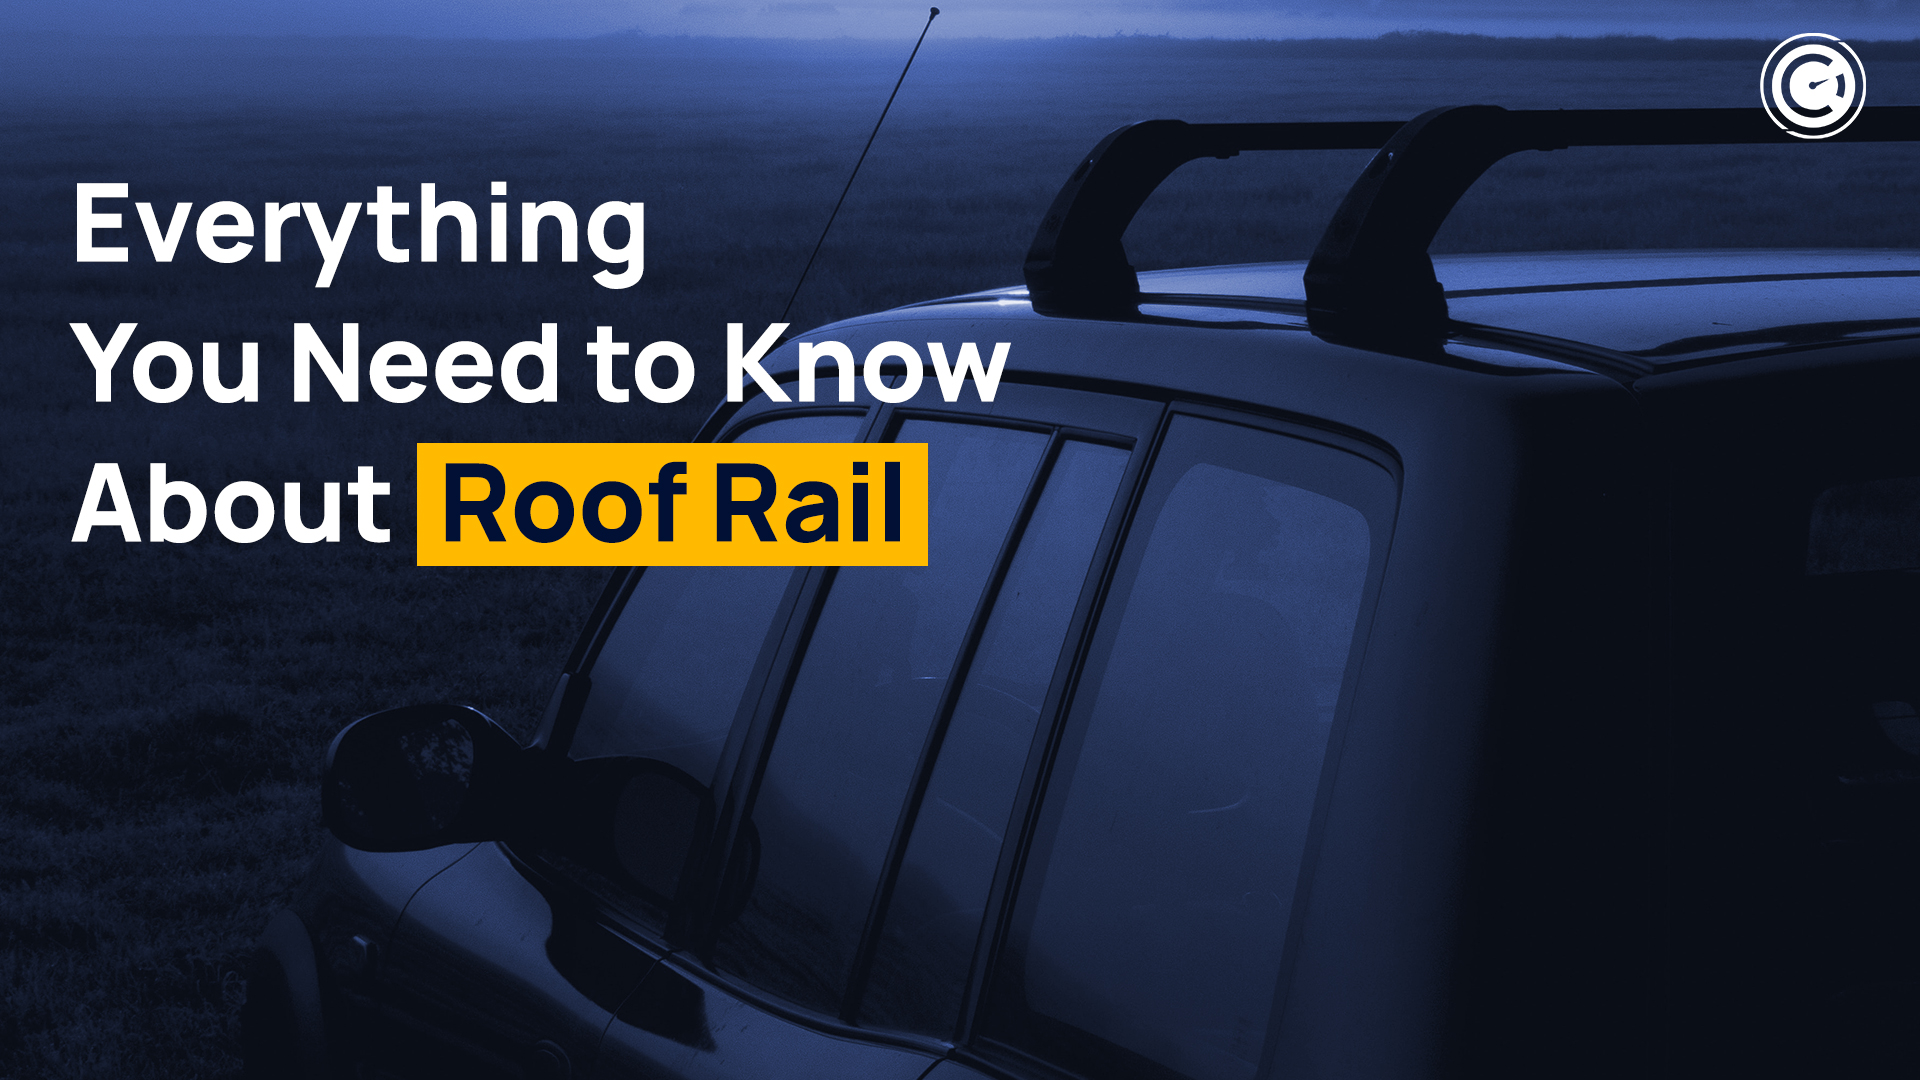 Roof Rail